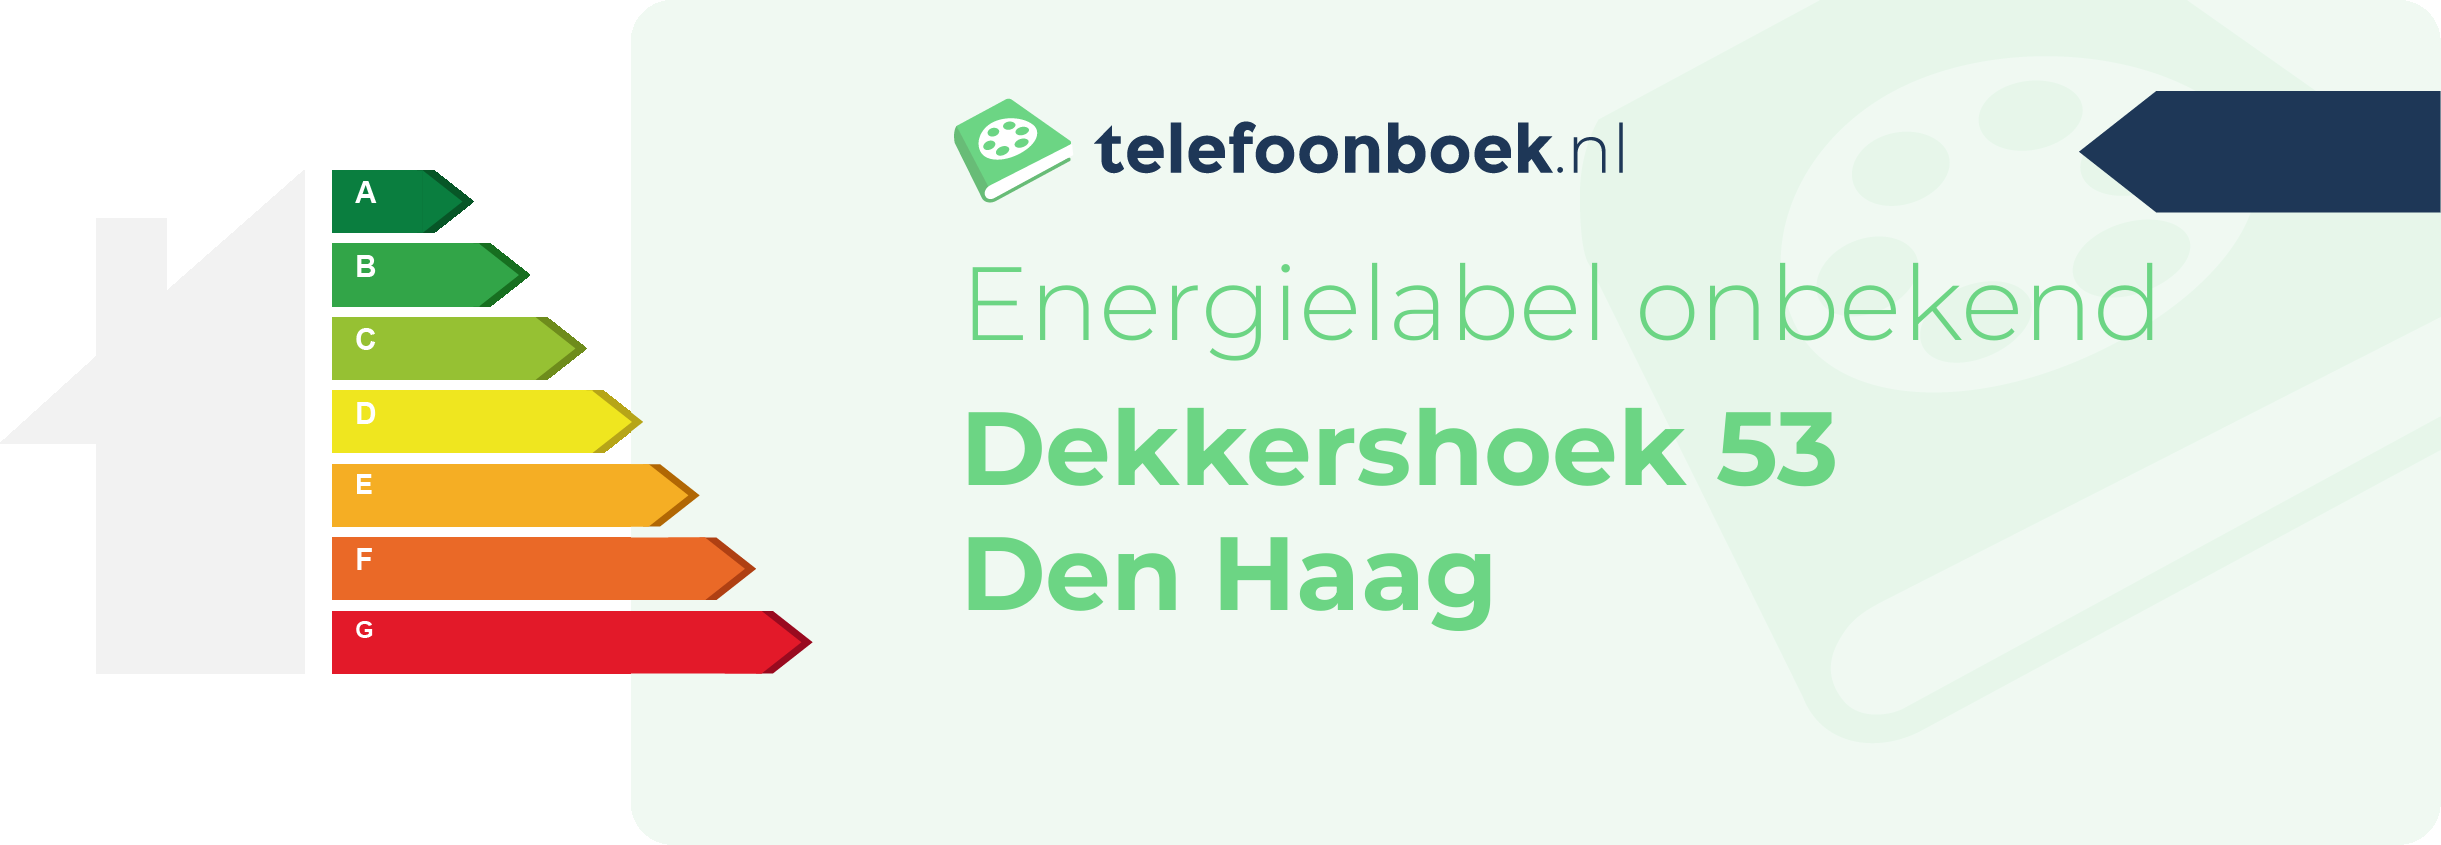 Energielabel Dekkershoek 53 Den Haag